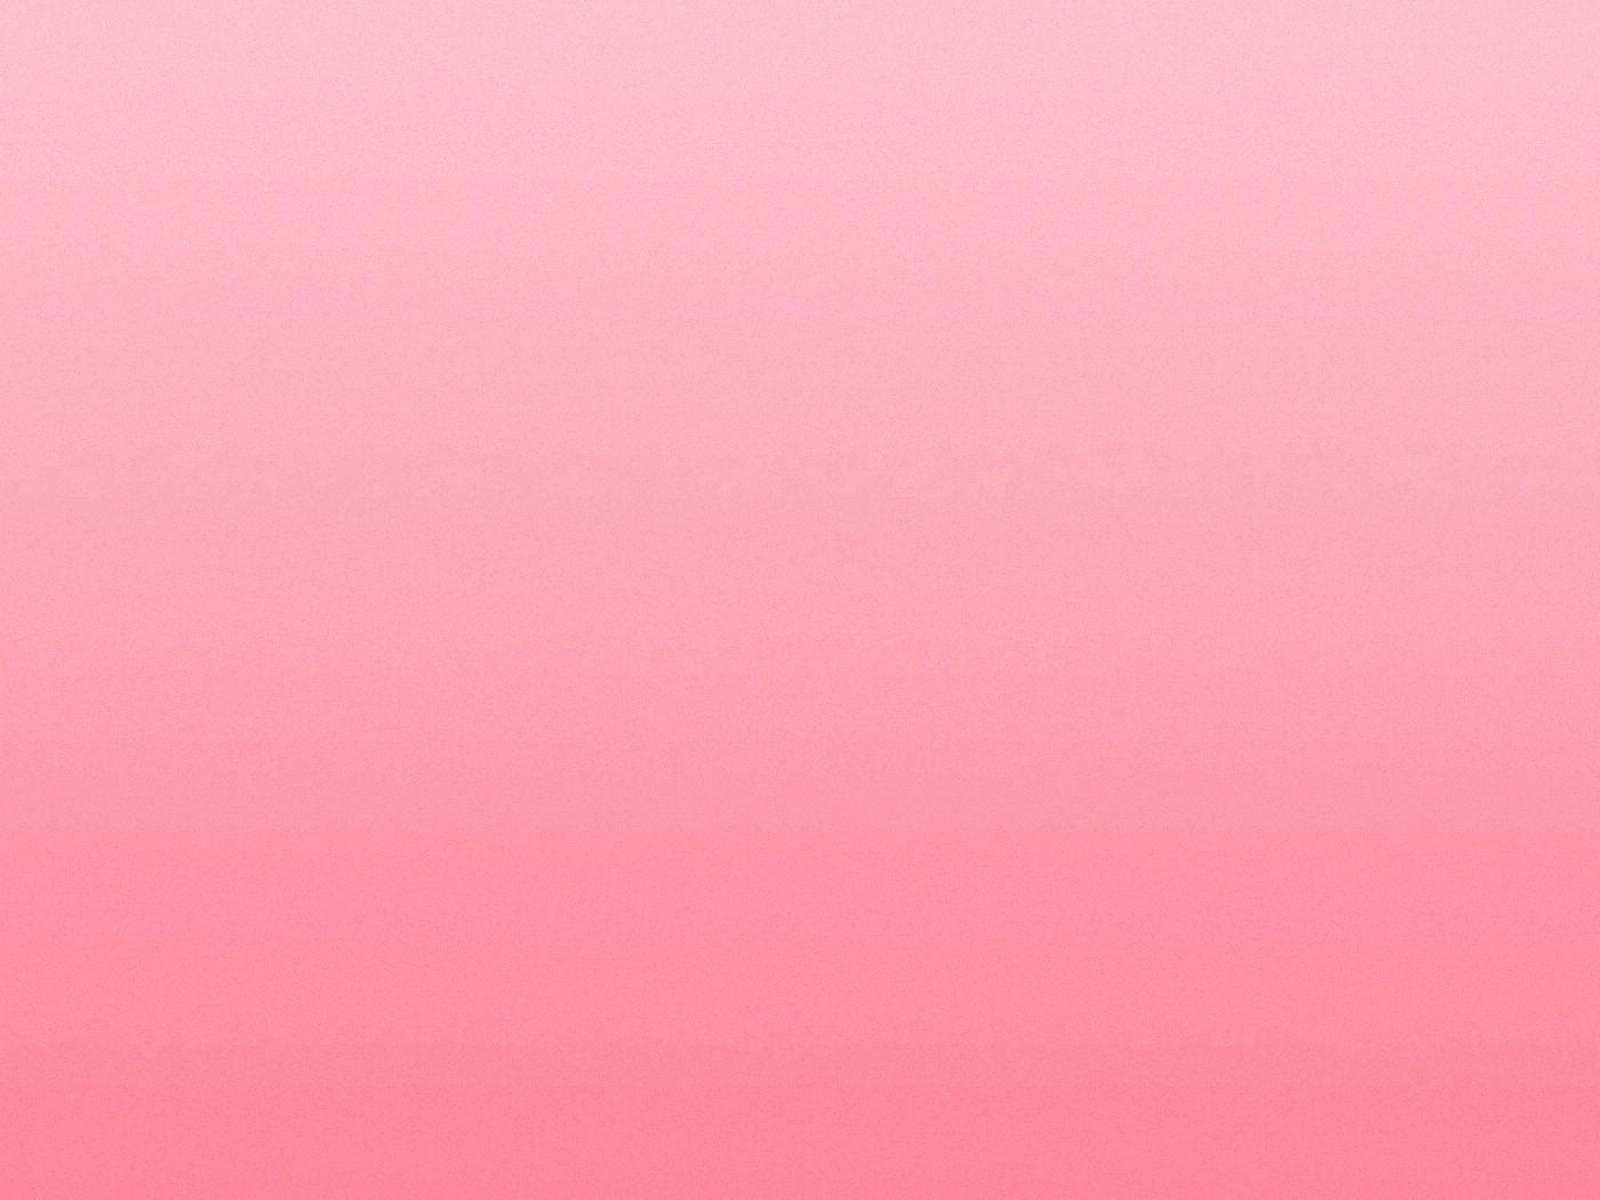 Fondos De Colores Rosas Wallpapers color rosa pastel | Fondos de Pantalla